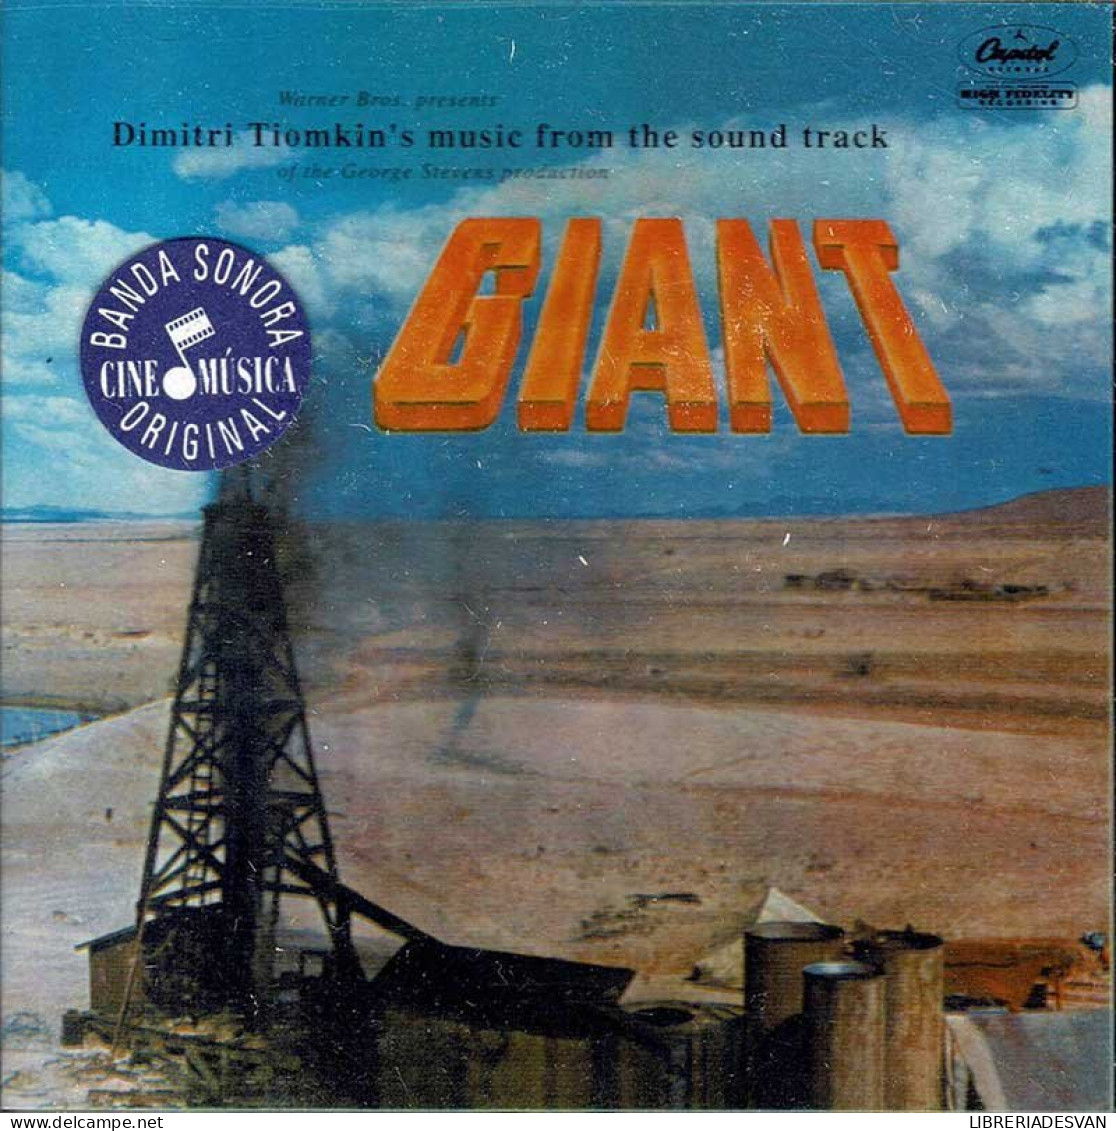 Dimitri Tiomkin - Giant. CD - Soundtracks, Film Music